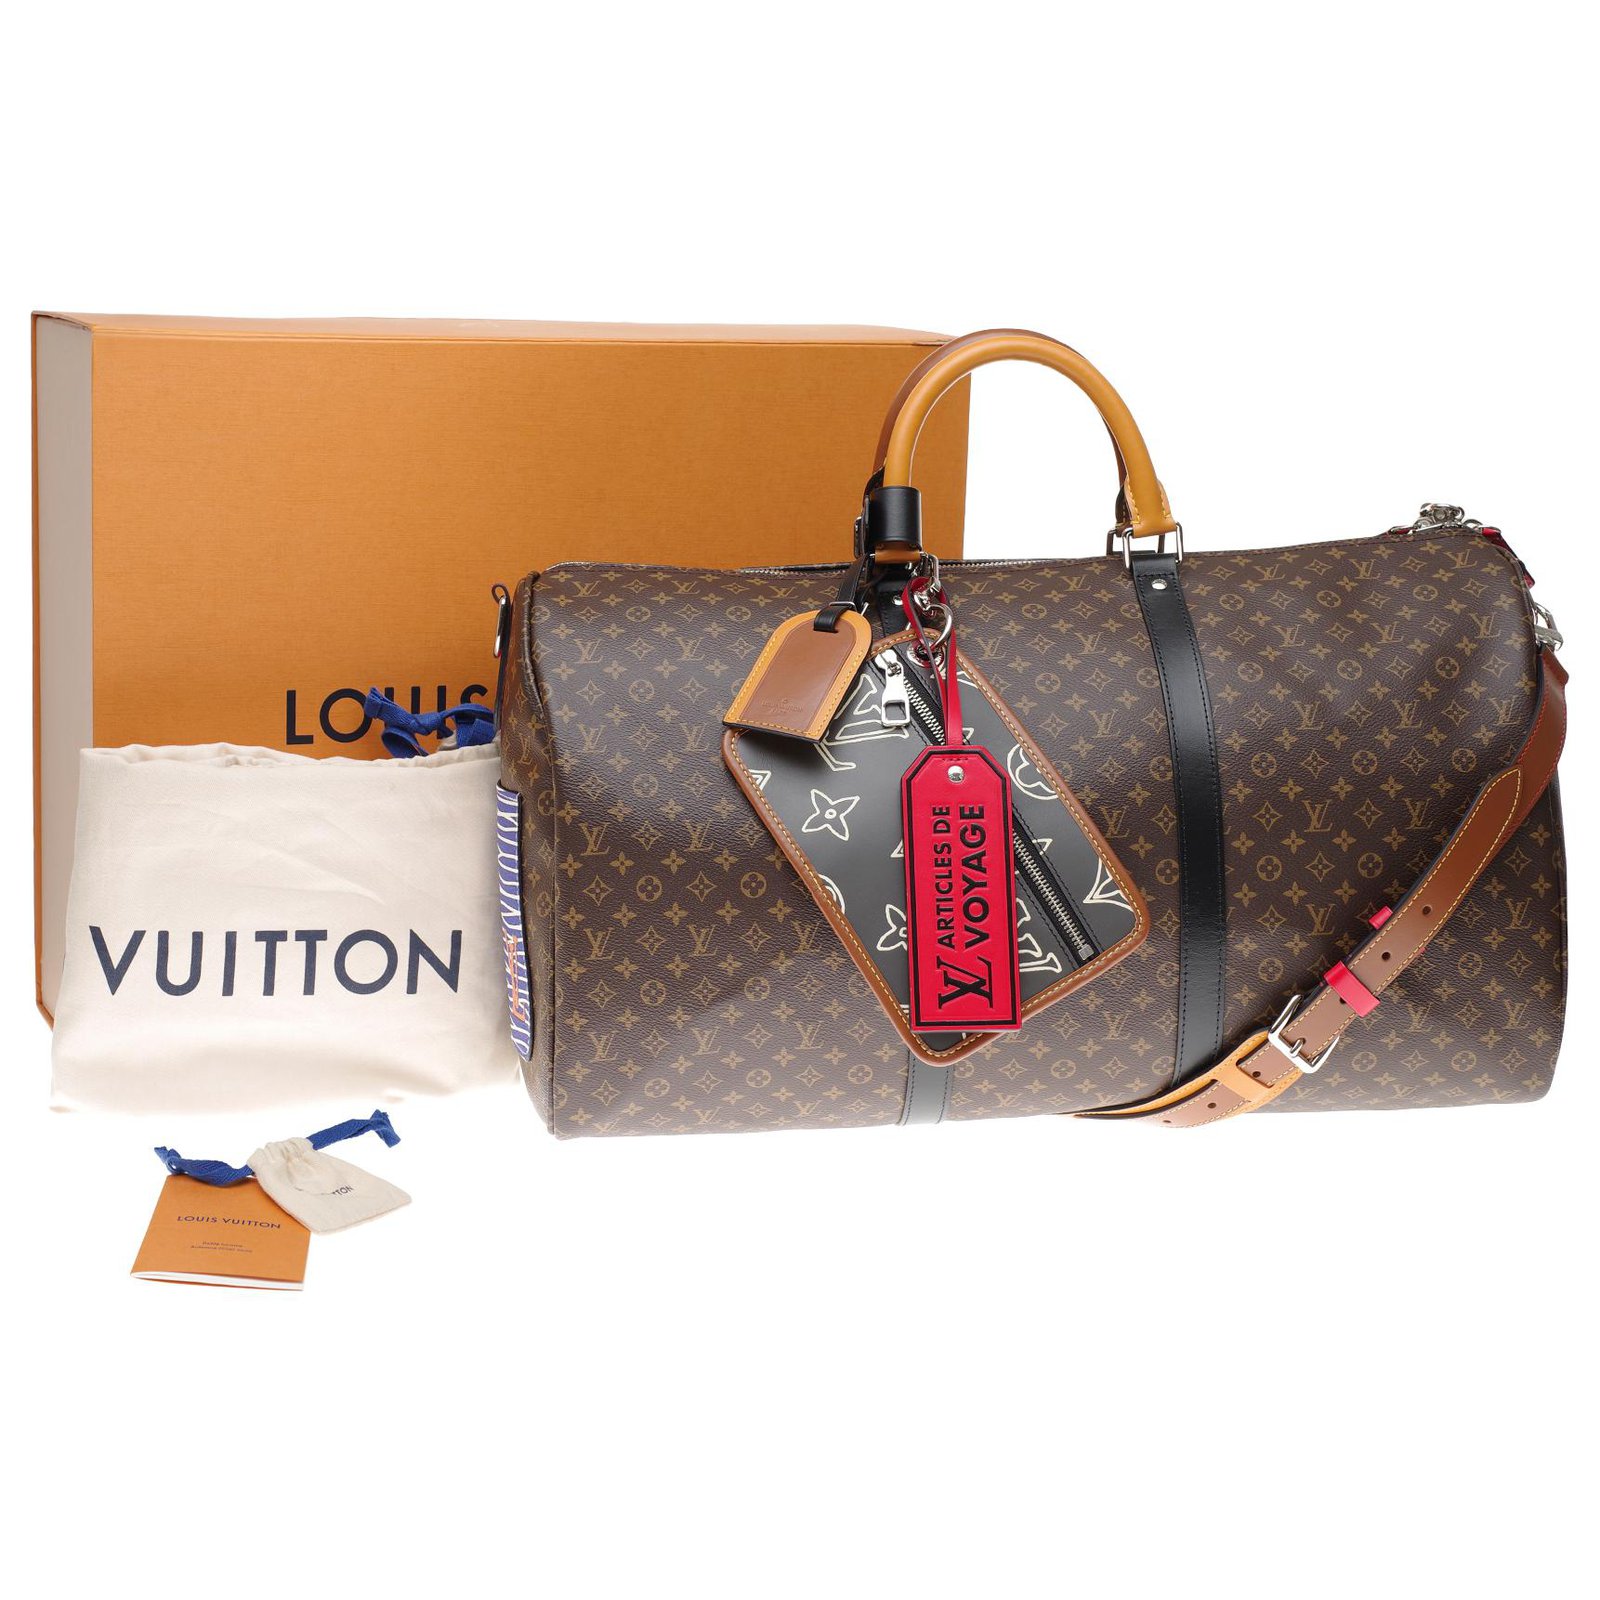 Louis Vuitton - Reisetasche - Kleiderständer